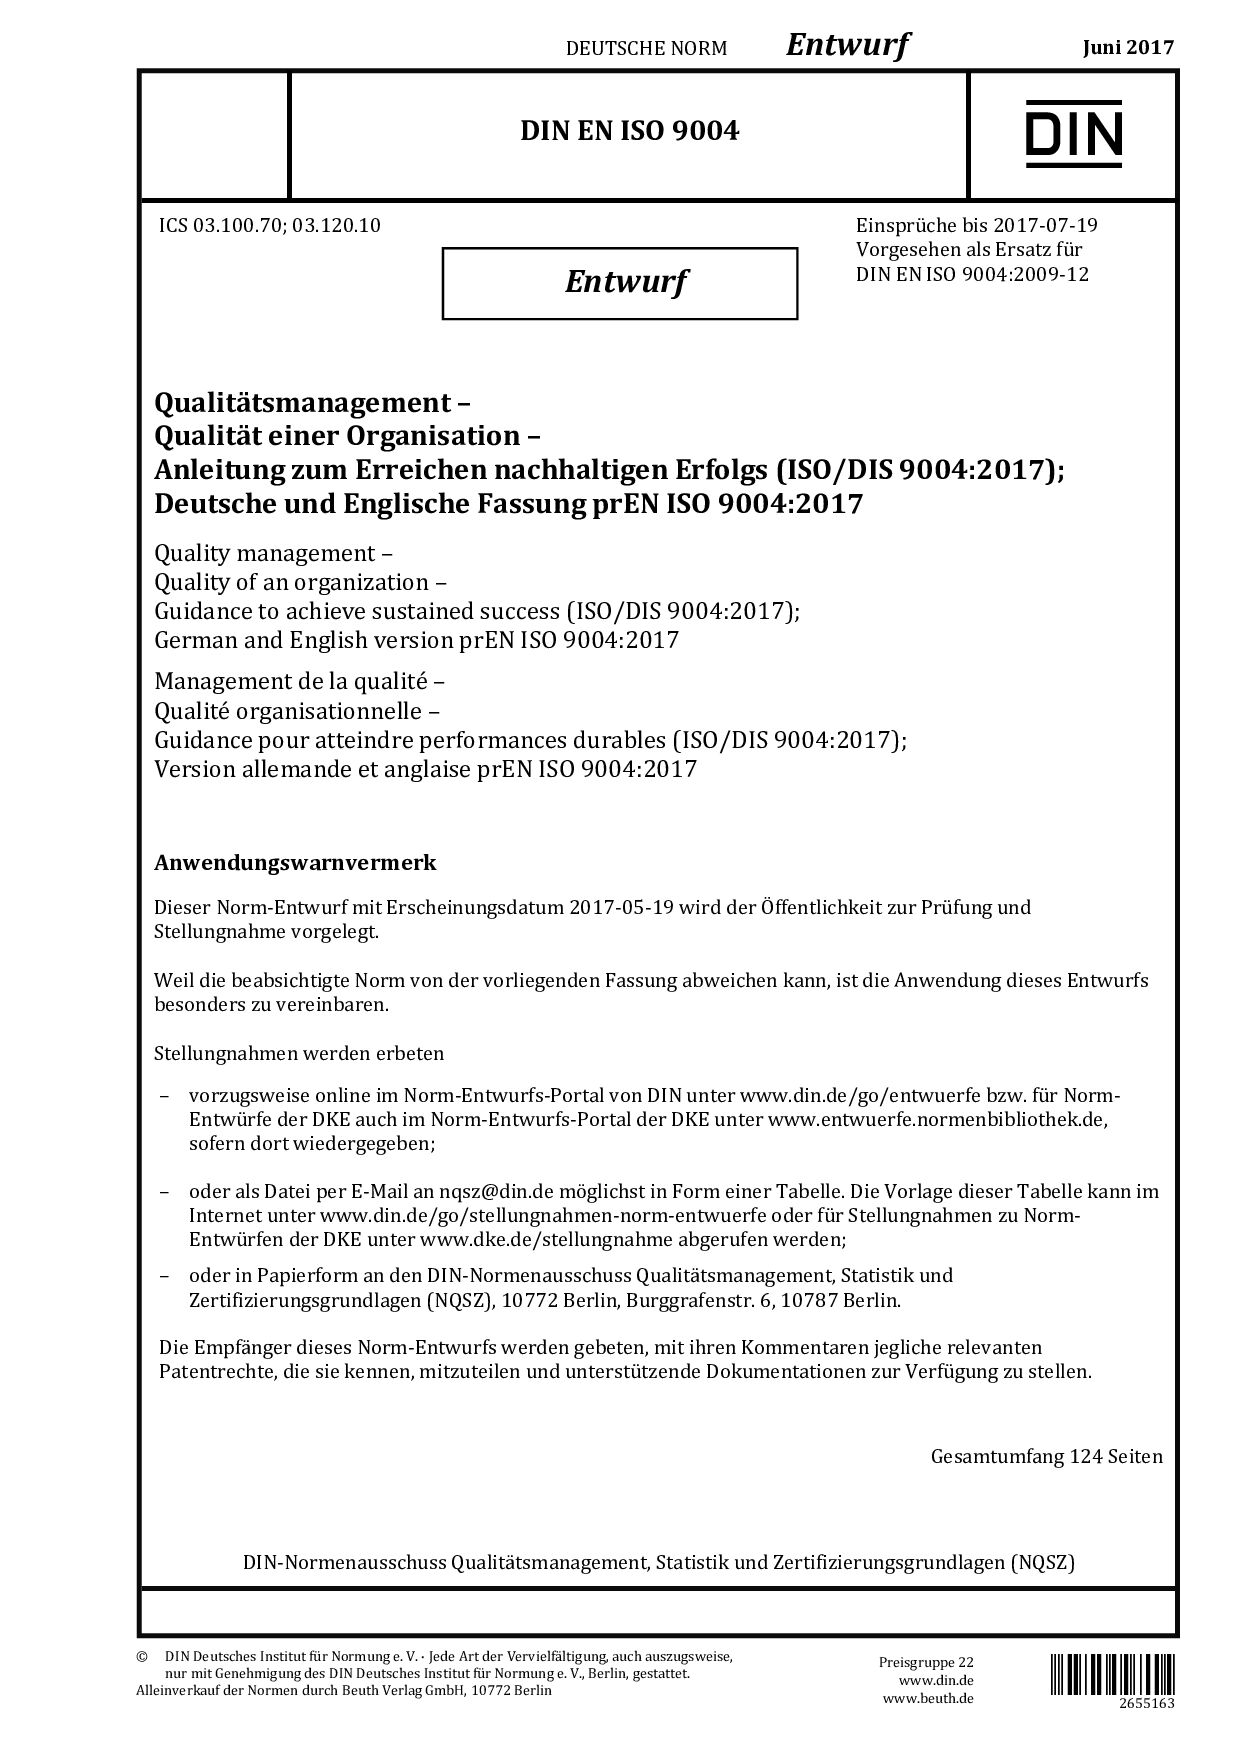 DIN EN ISO 9004 E:2017-06封面图